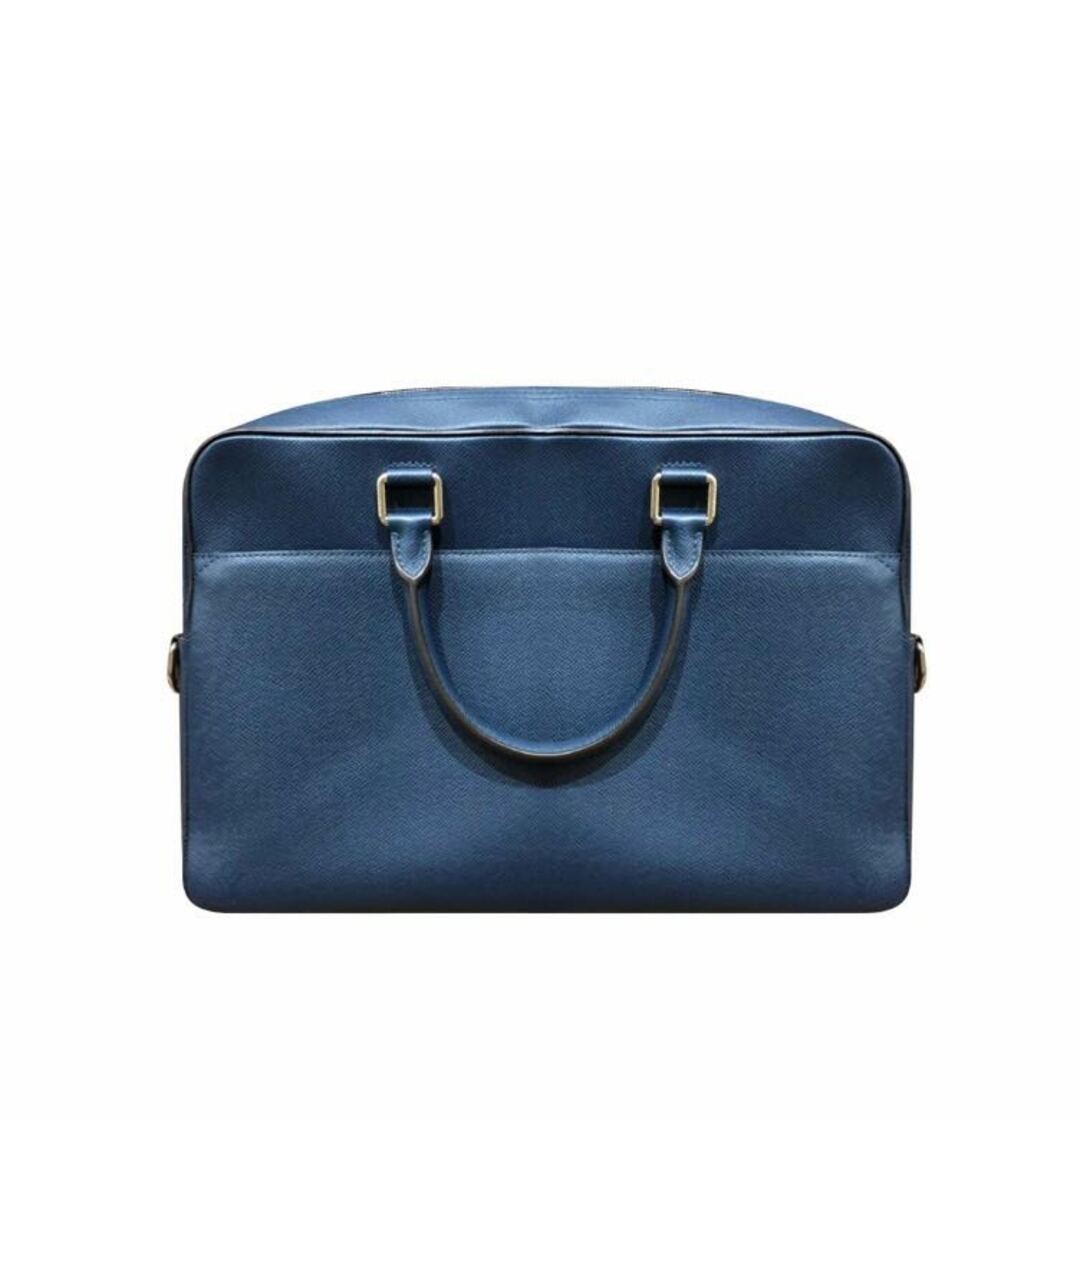 LOUIS VUITTON PRE-OWNED Синий кожаный портфель, фото 1